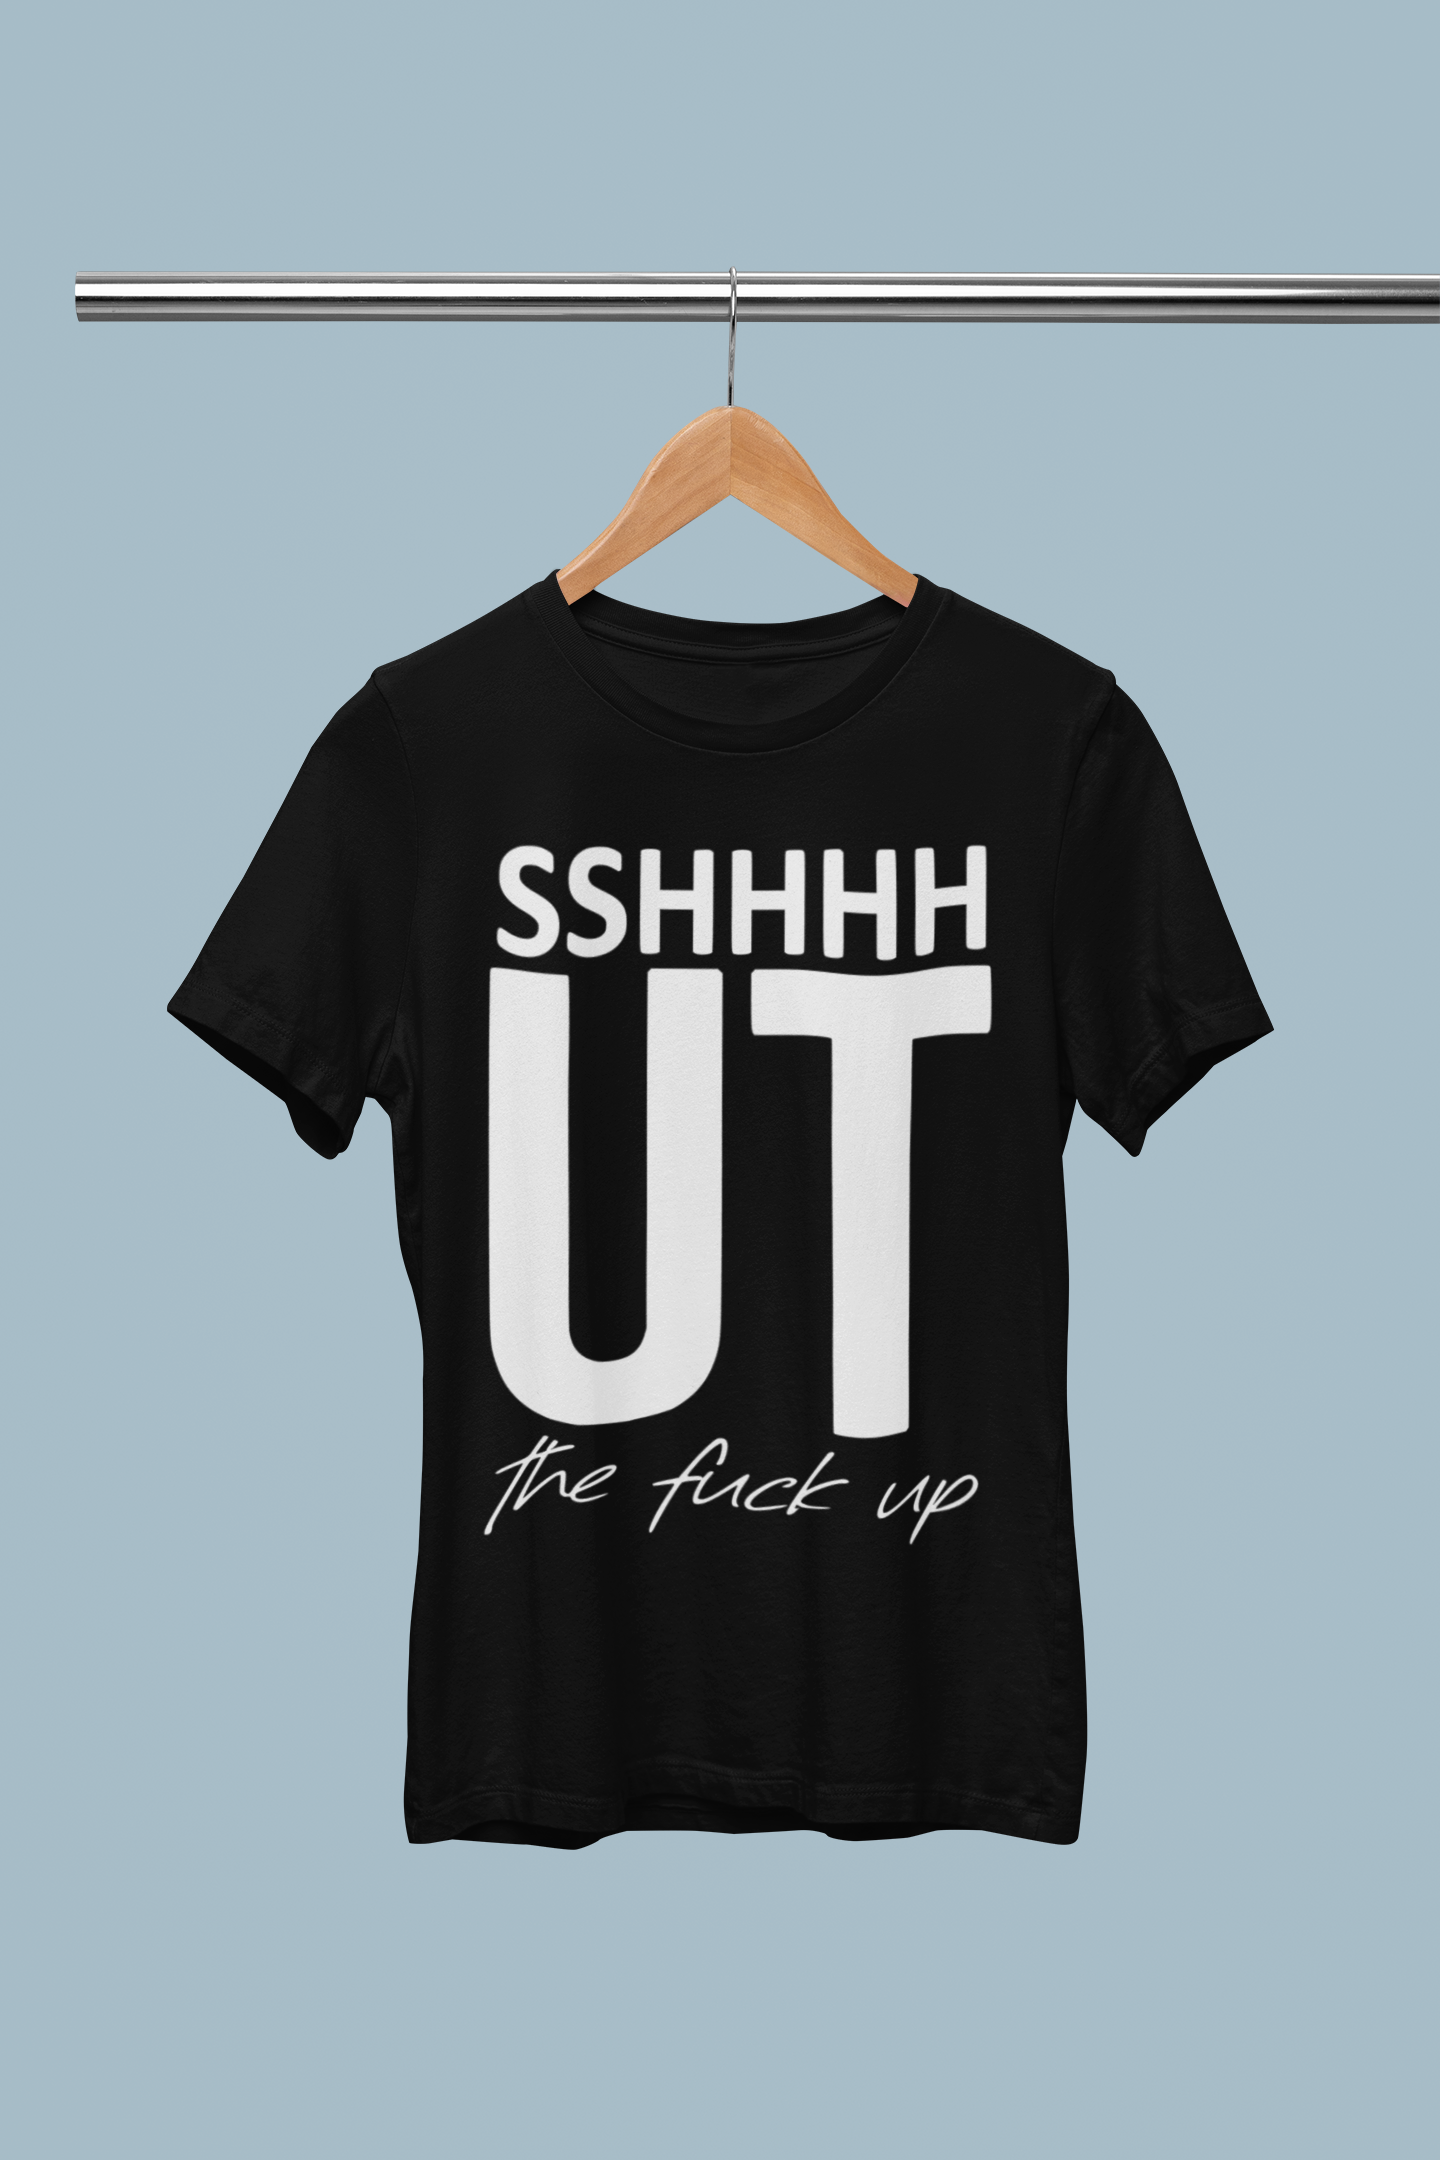 SSHHHHUT the f@ck up T-shirt